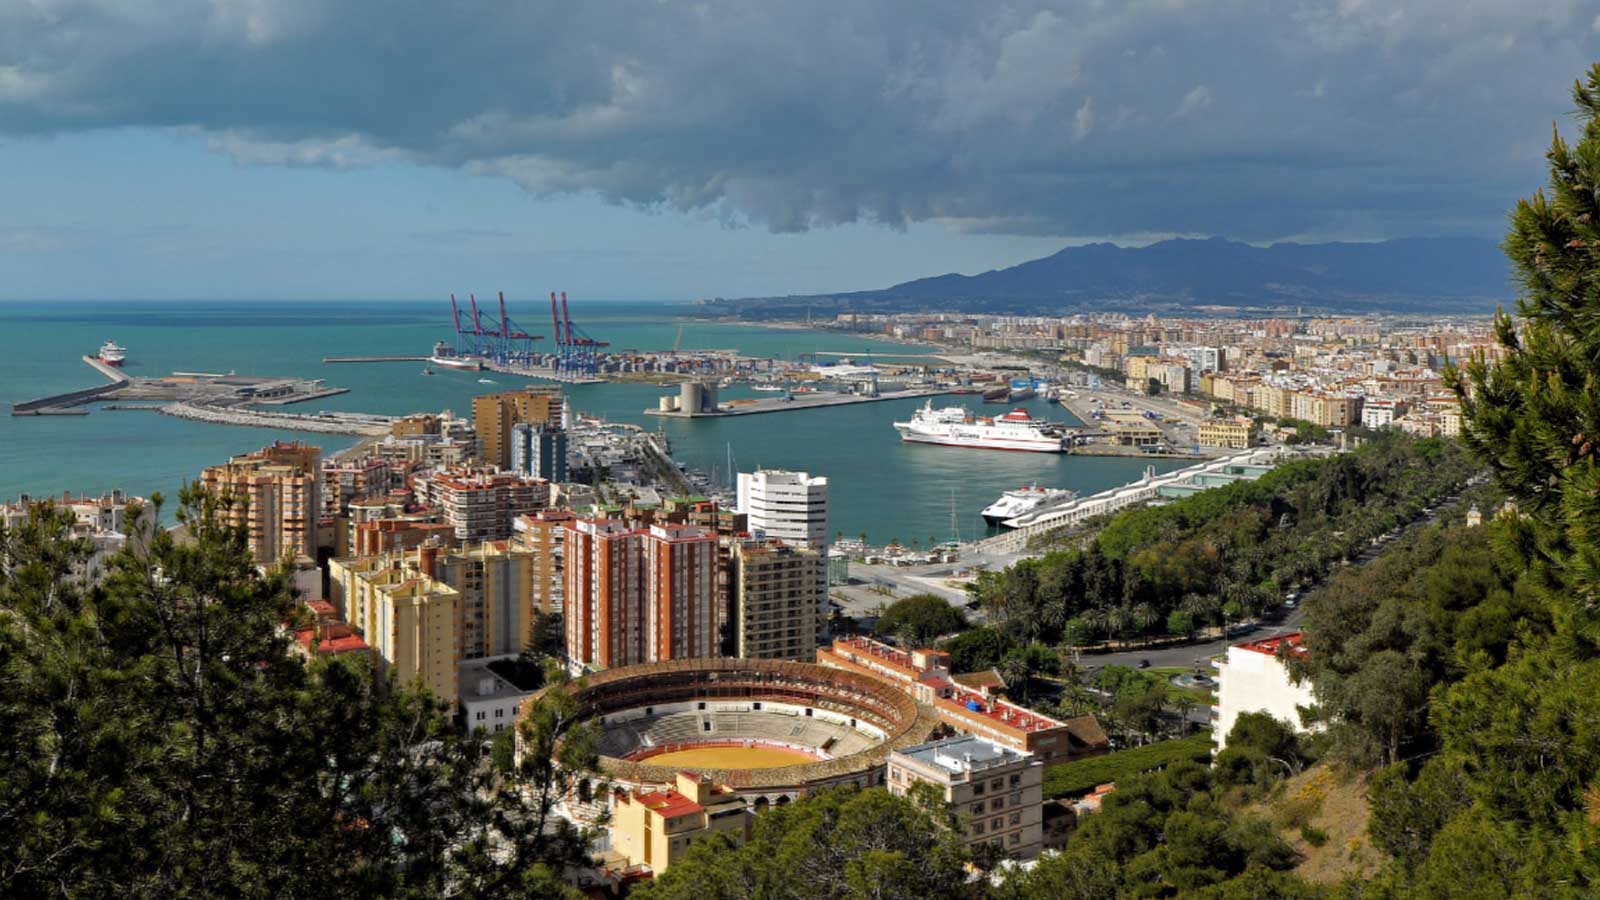 Ofertas de Traslados en Málaga. Traslados económicos en Málaga 